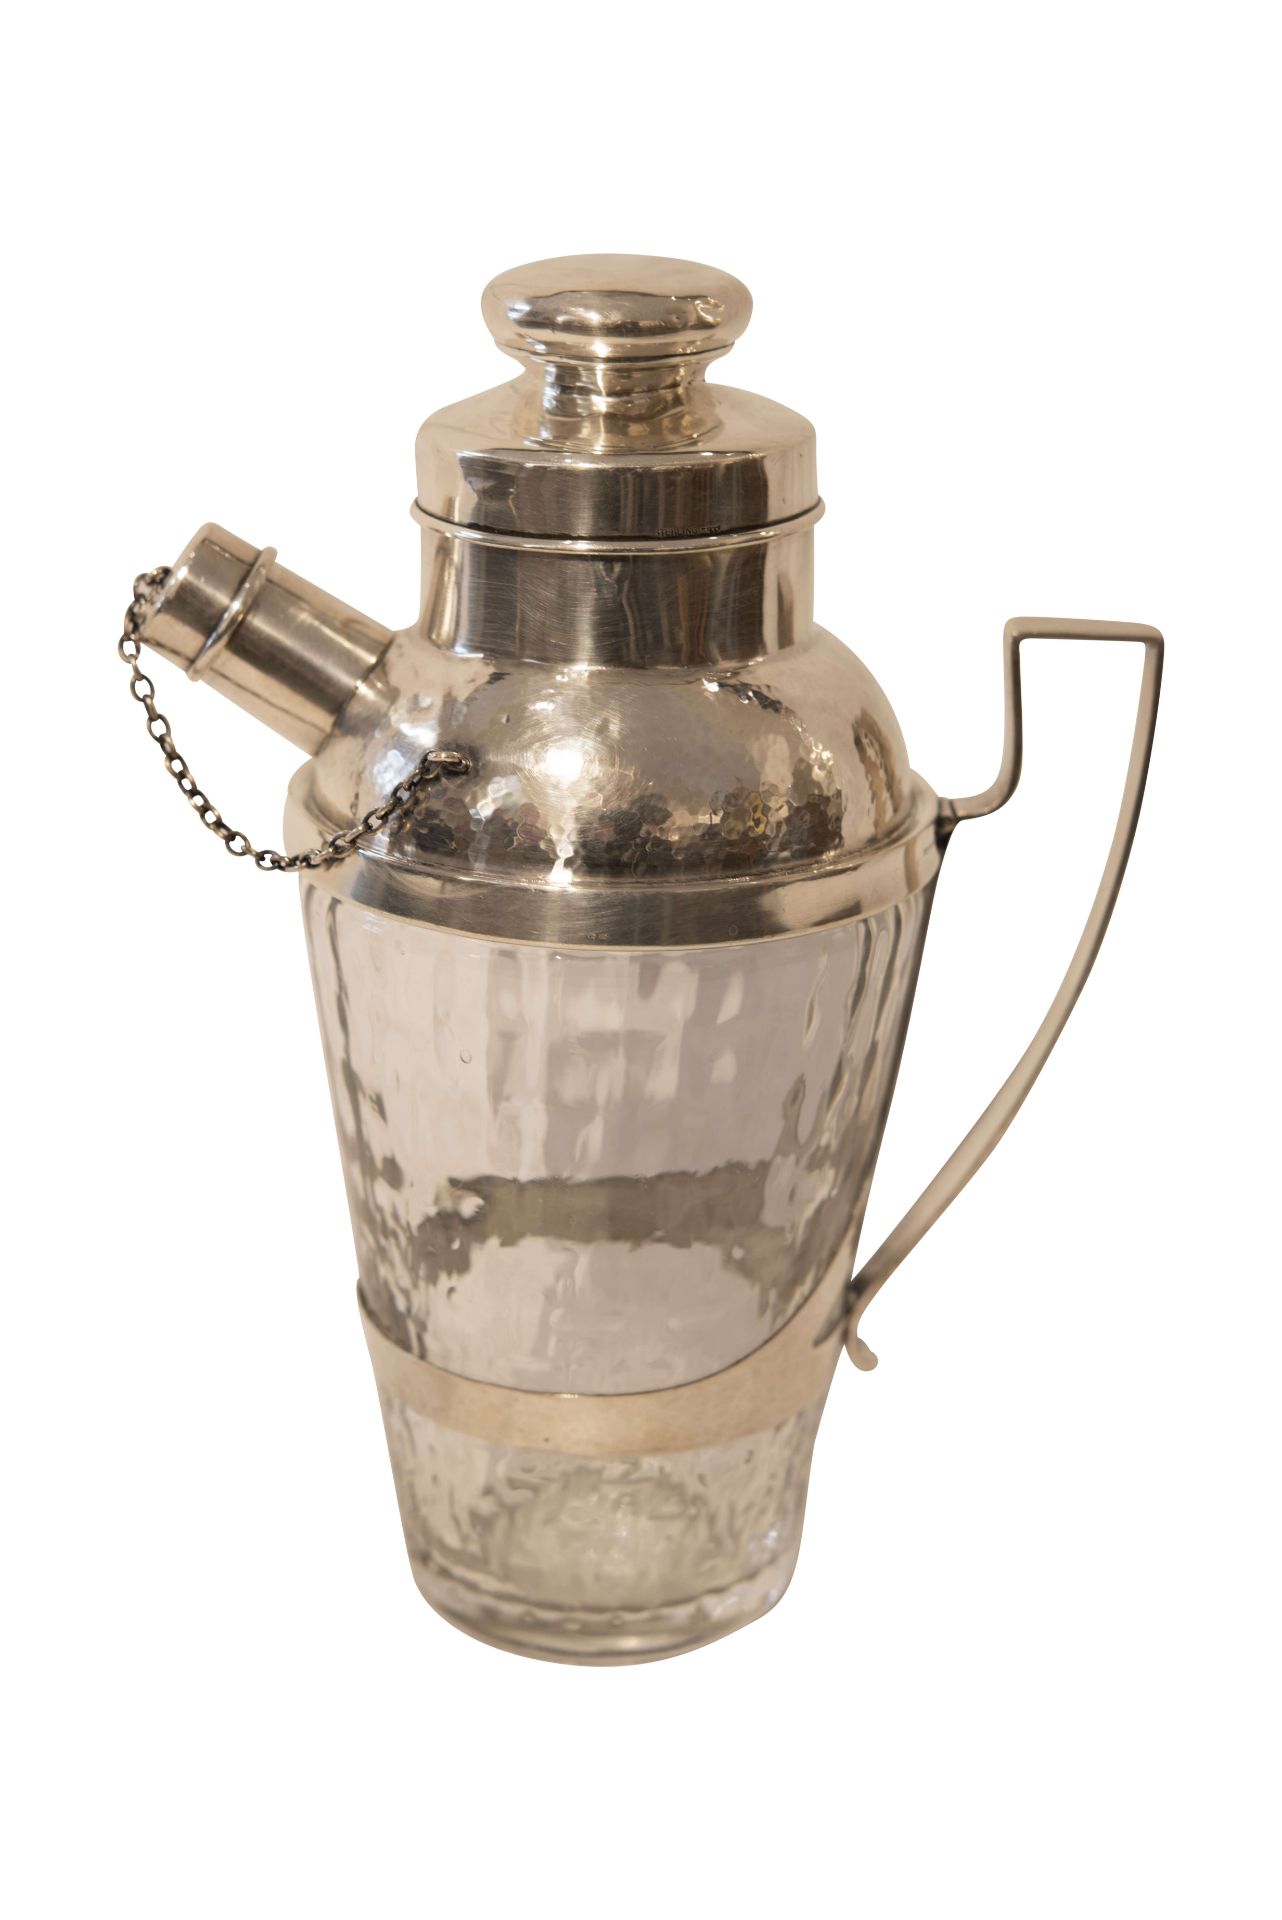 Shaker mit Ausguss und Deckel sowie Silber-Griff und Glasflasche | Shaker with Spout and Lid, Silver